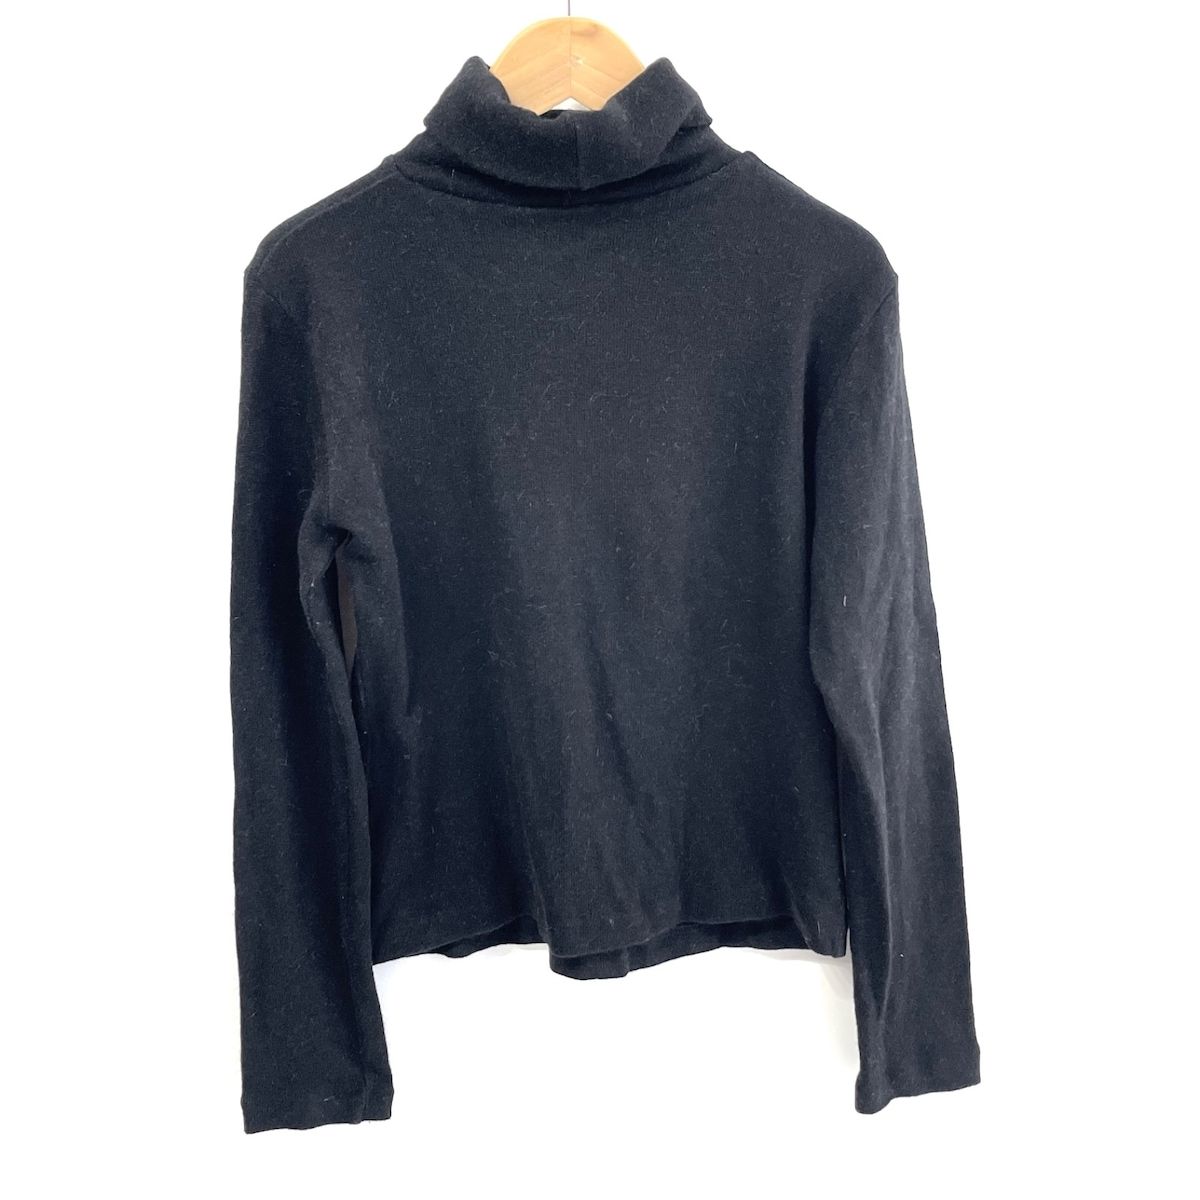 FENDI(フェンディ) 長袖セーター サイズUSA6 M レディース美品 - 黒×白 ハイネック/FFロゴ/刺繍